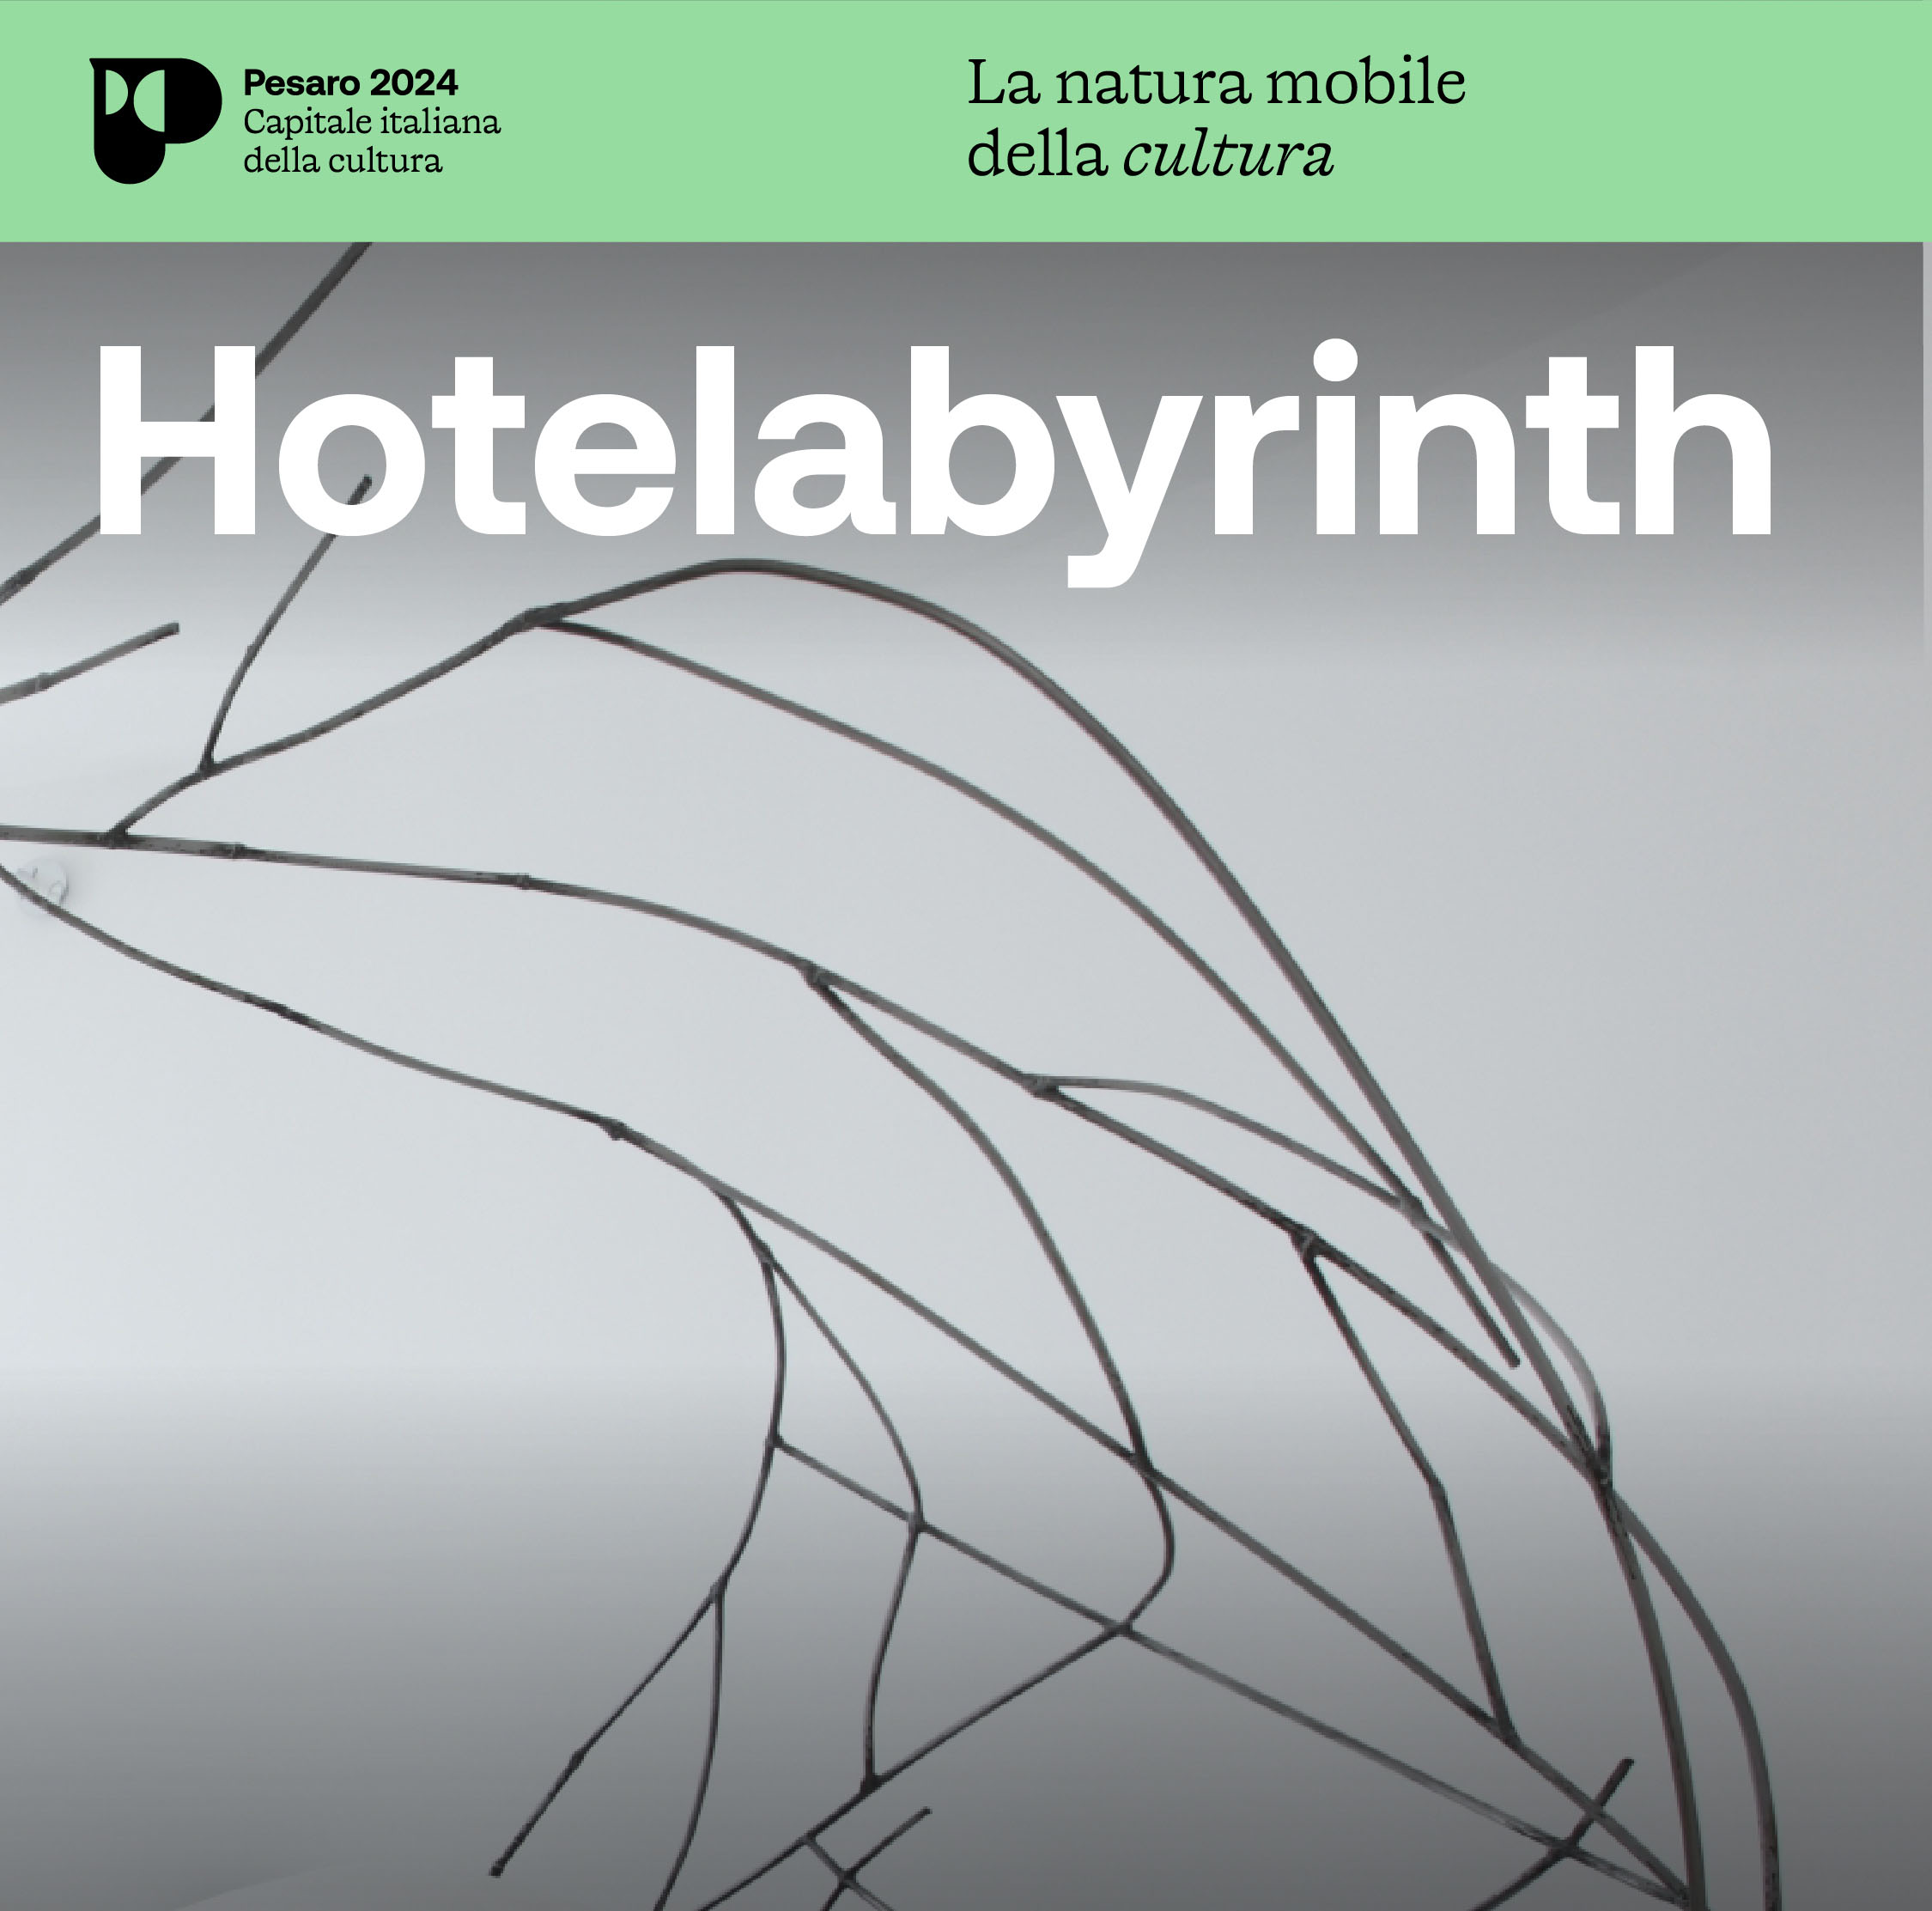 “HOTELABYRINTH”, UN PROGETTO DI AMAT PER PESARO 2024: SELEZIONATI GLI ARTISTI E LE ARTISTE